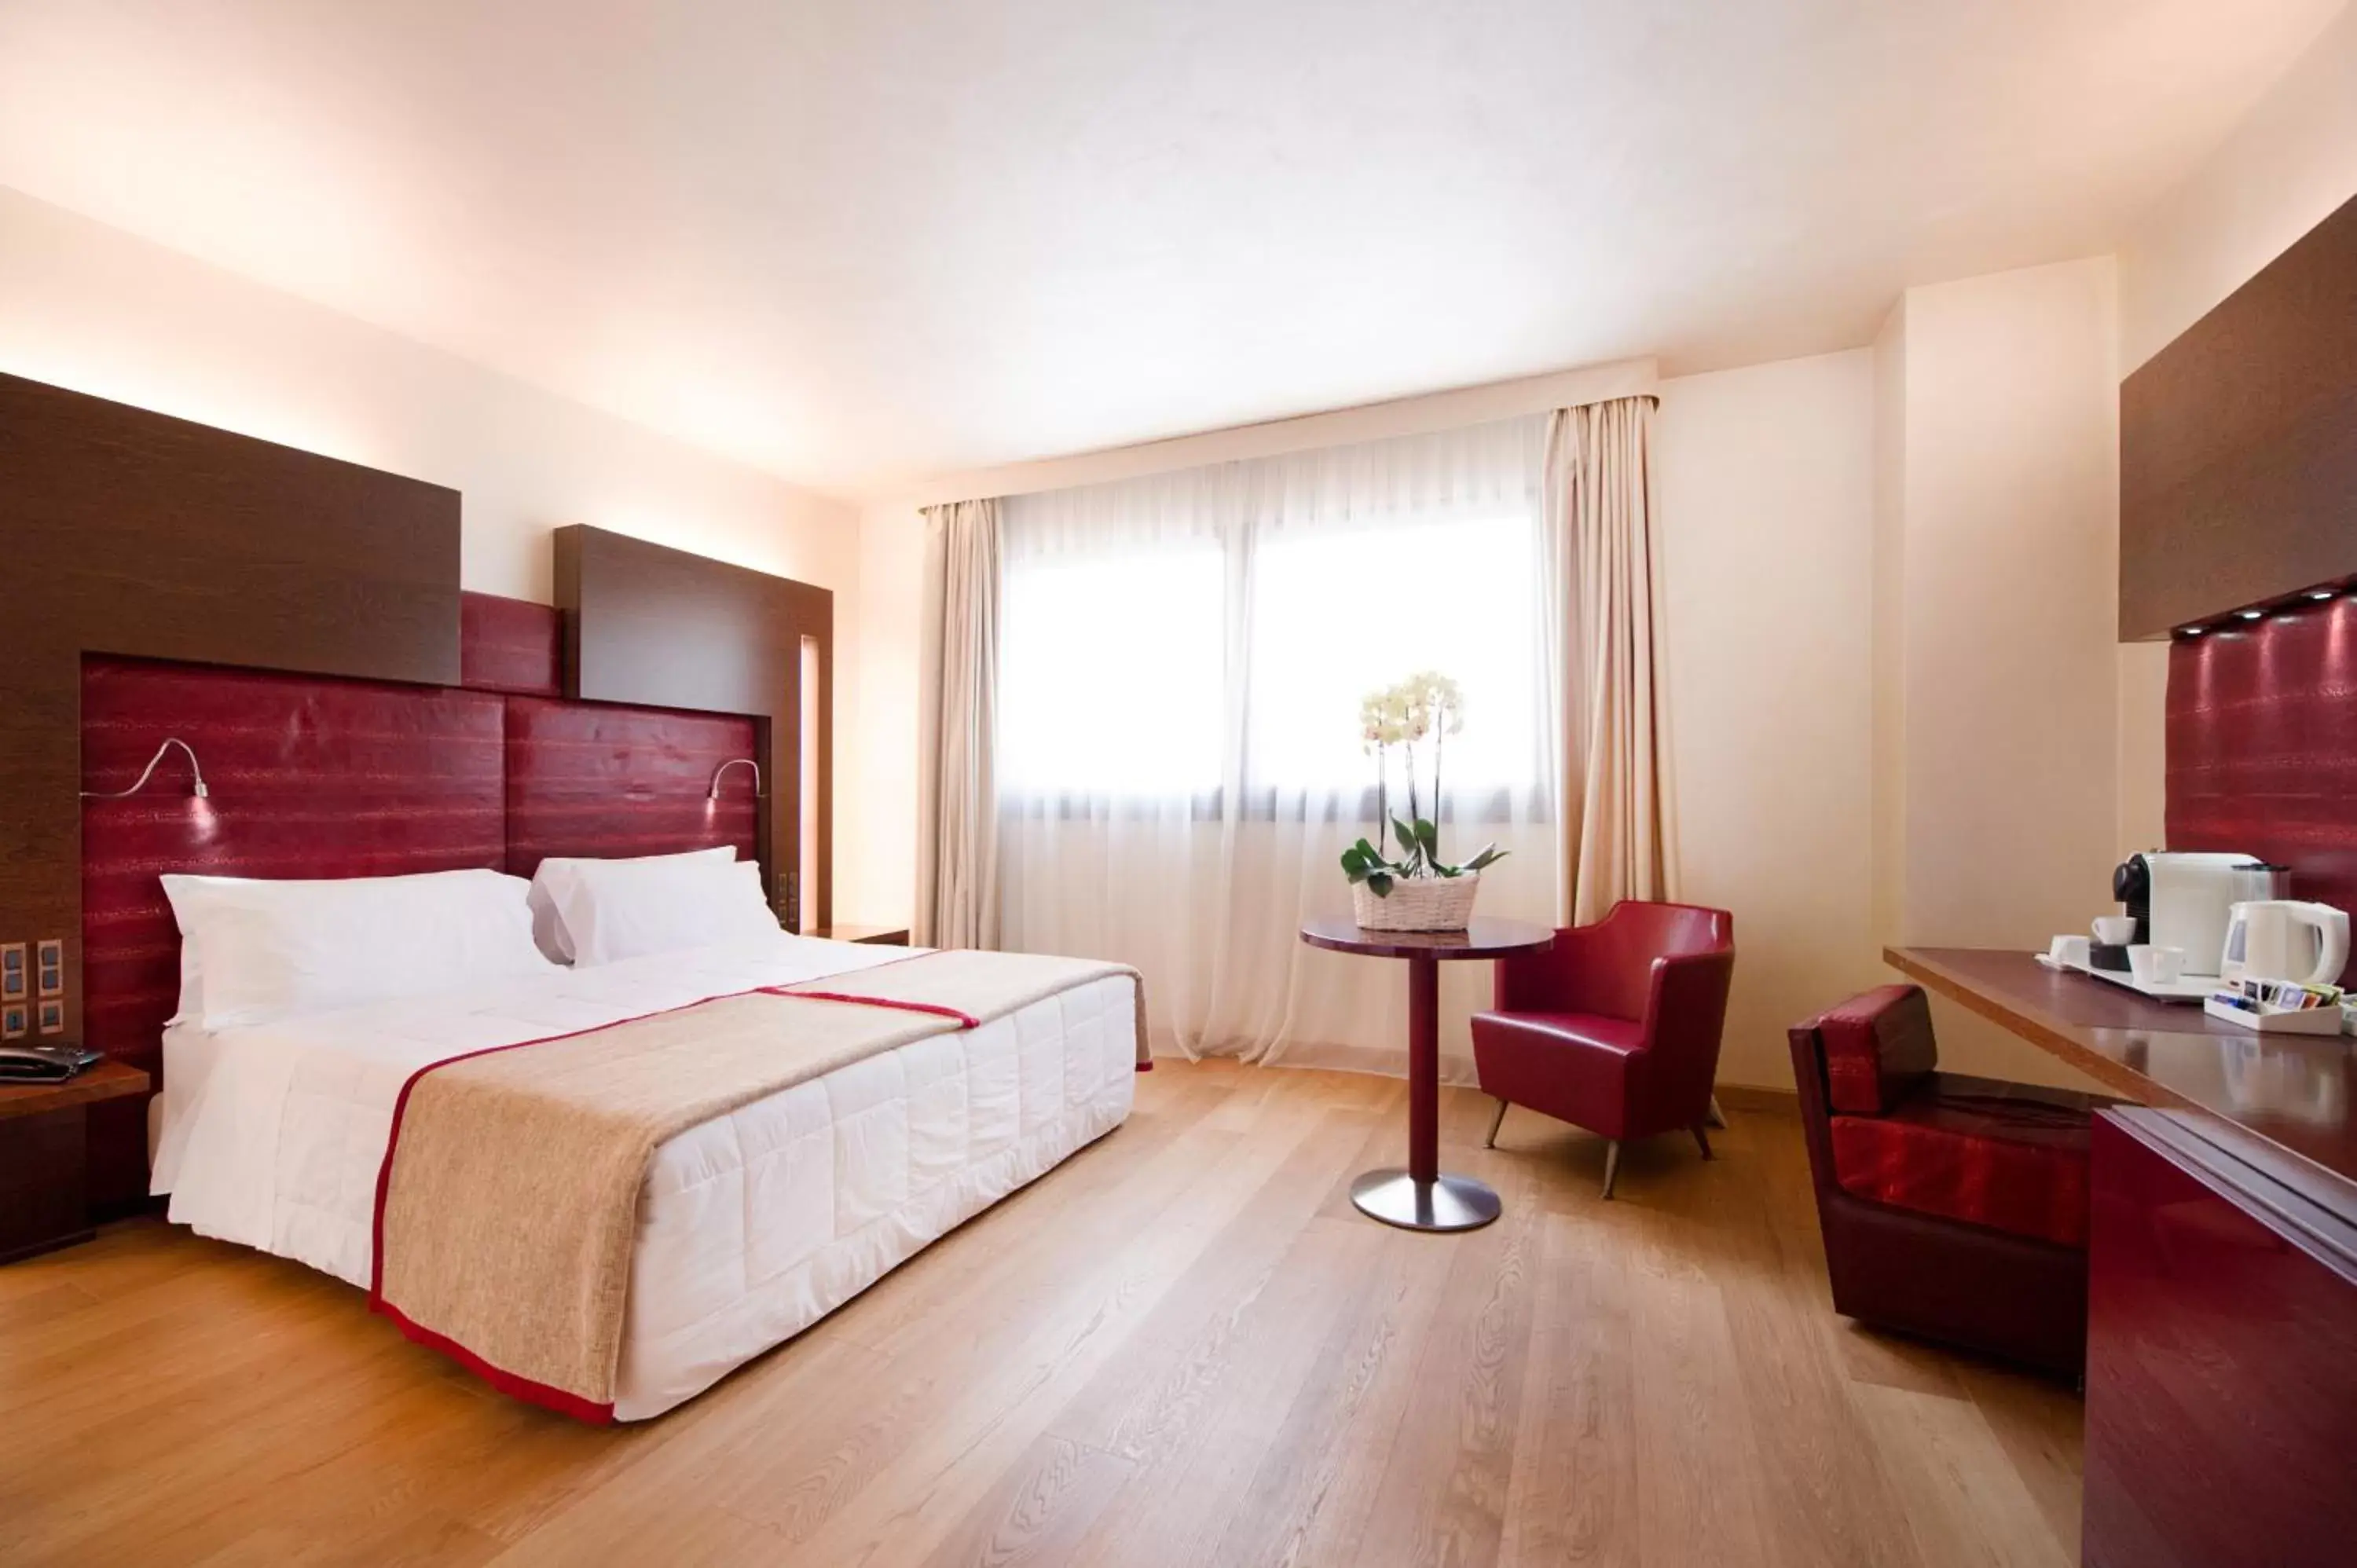 Bedroom, Room Photo in Art Hotel Navigli